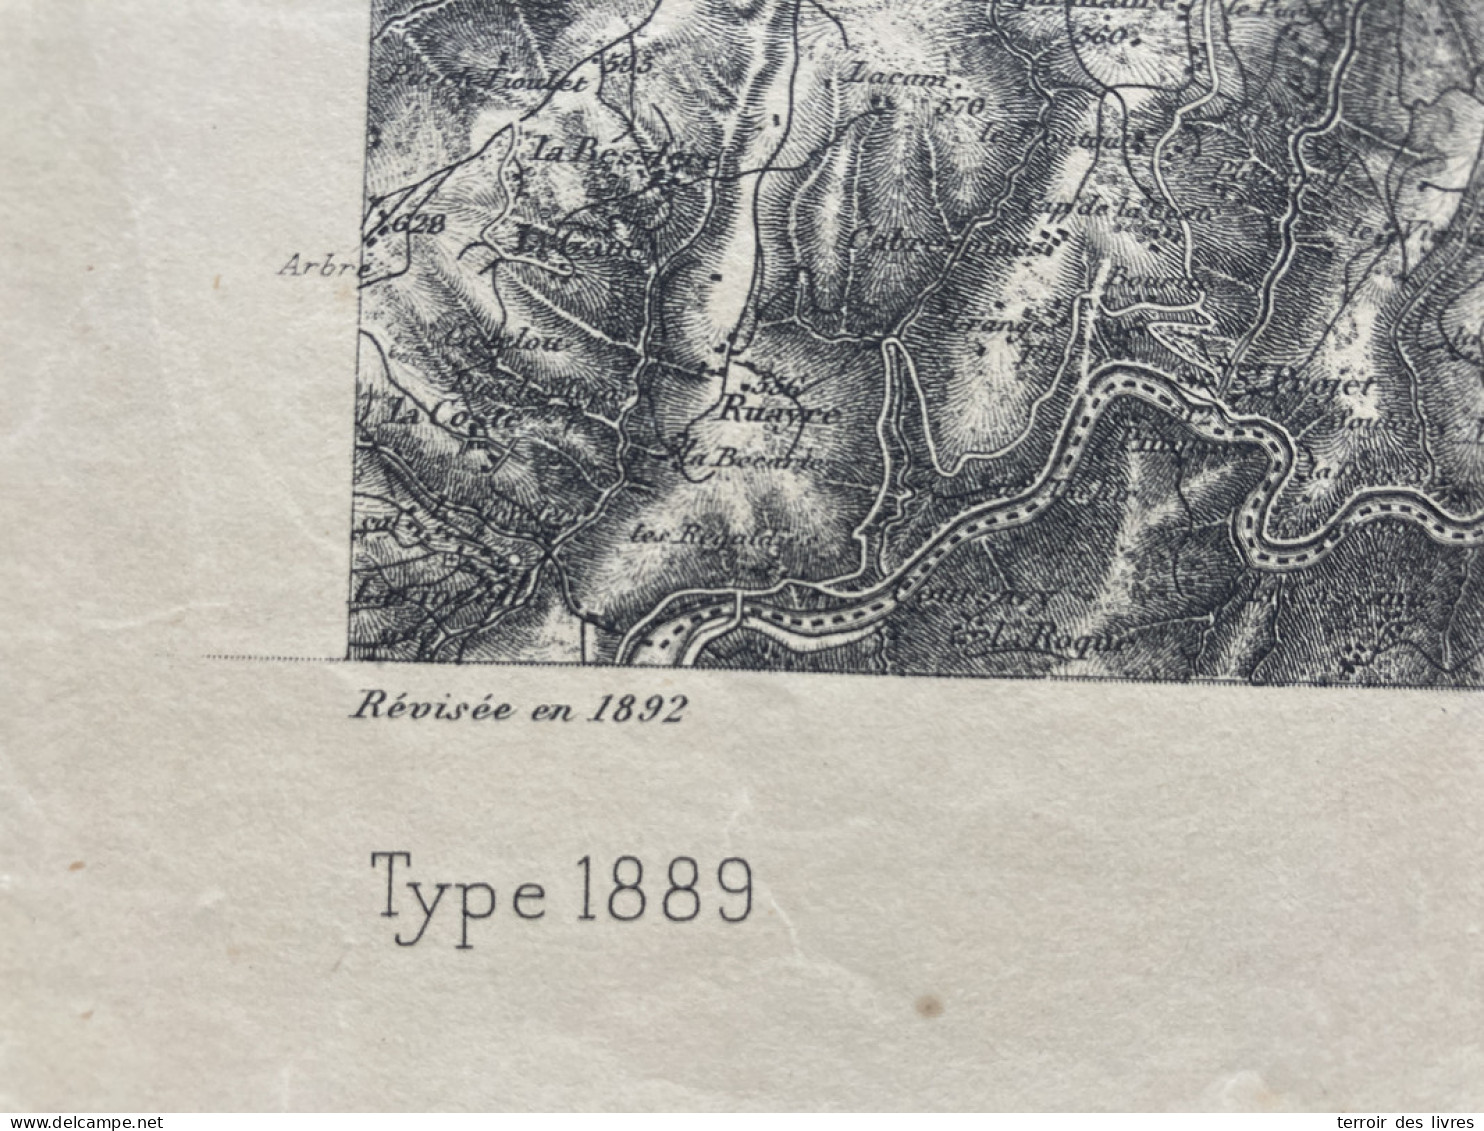 Carte état Major FIGEAC 1892 35x54cm LADINHAC LEUCAMP LAPEYRUGUE LABESSERETTE SANSAC-VEINAZES MUROLS LAFEUILLADE-EN-VEZI - Geographical Maps